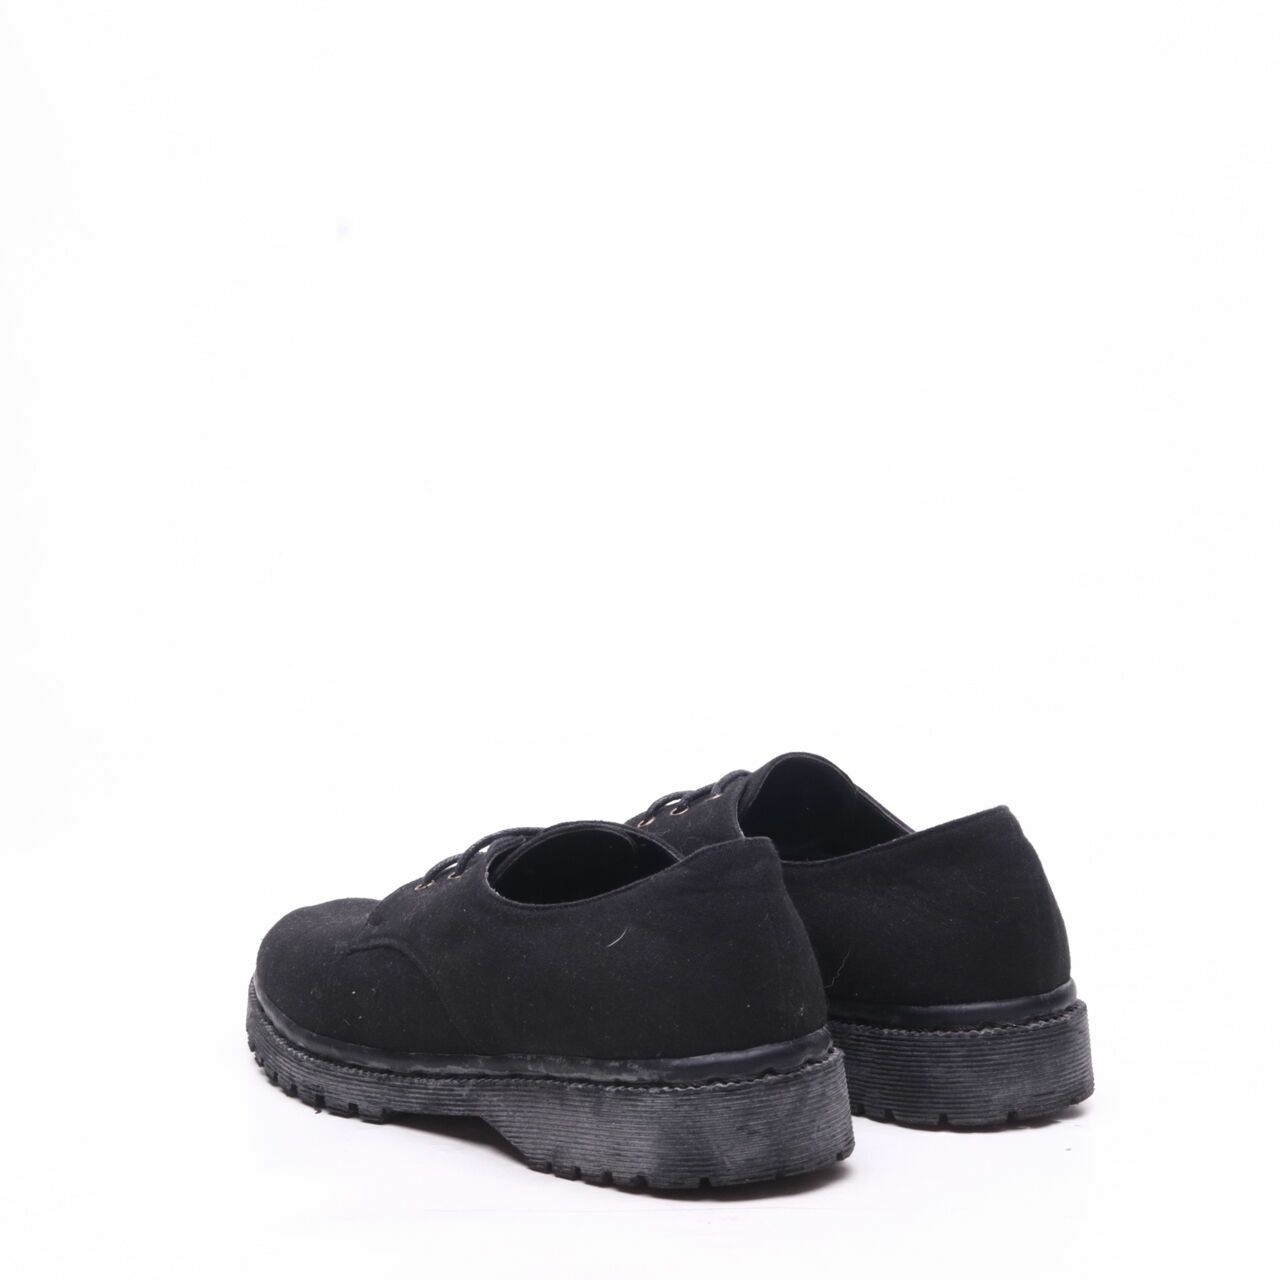 MKS Black Sneakers